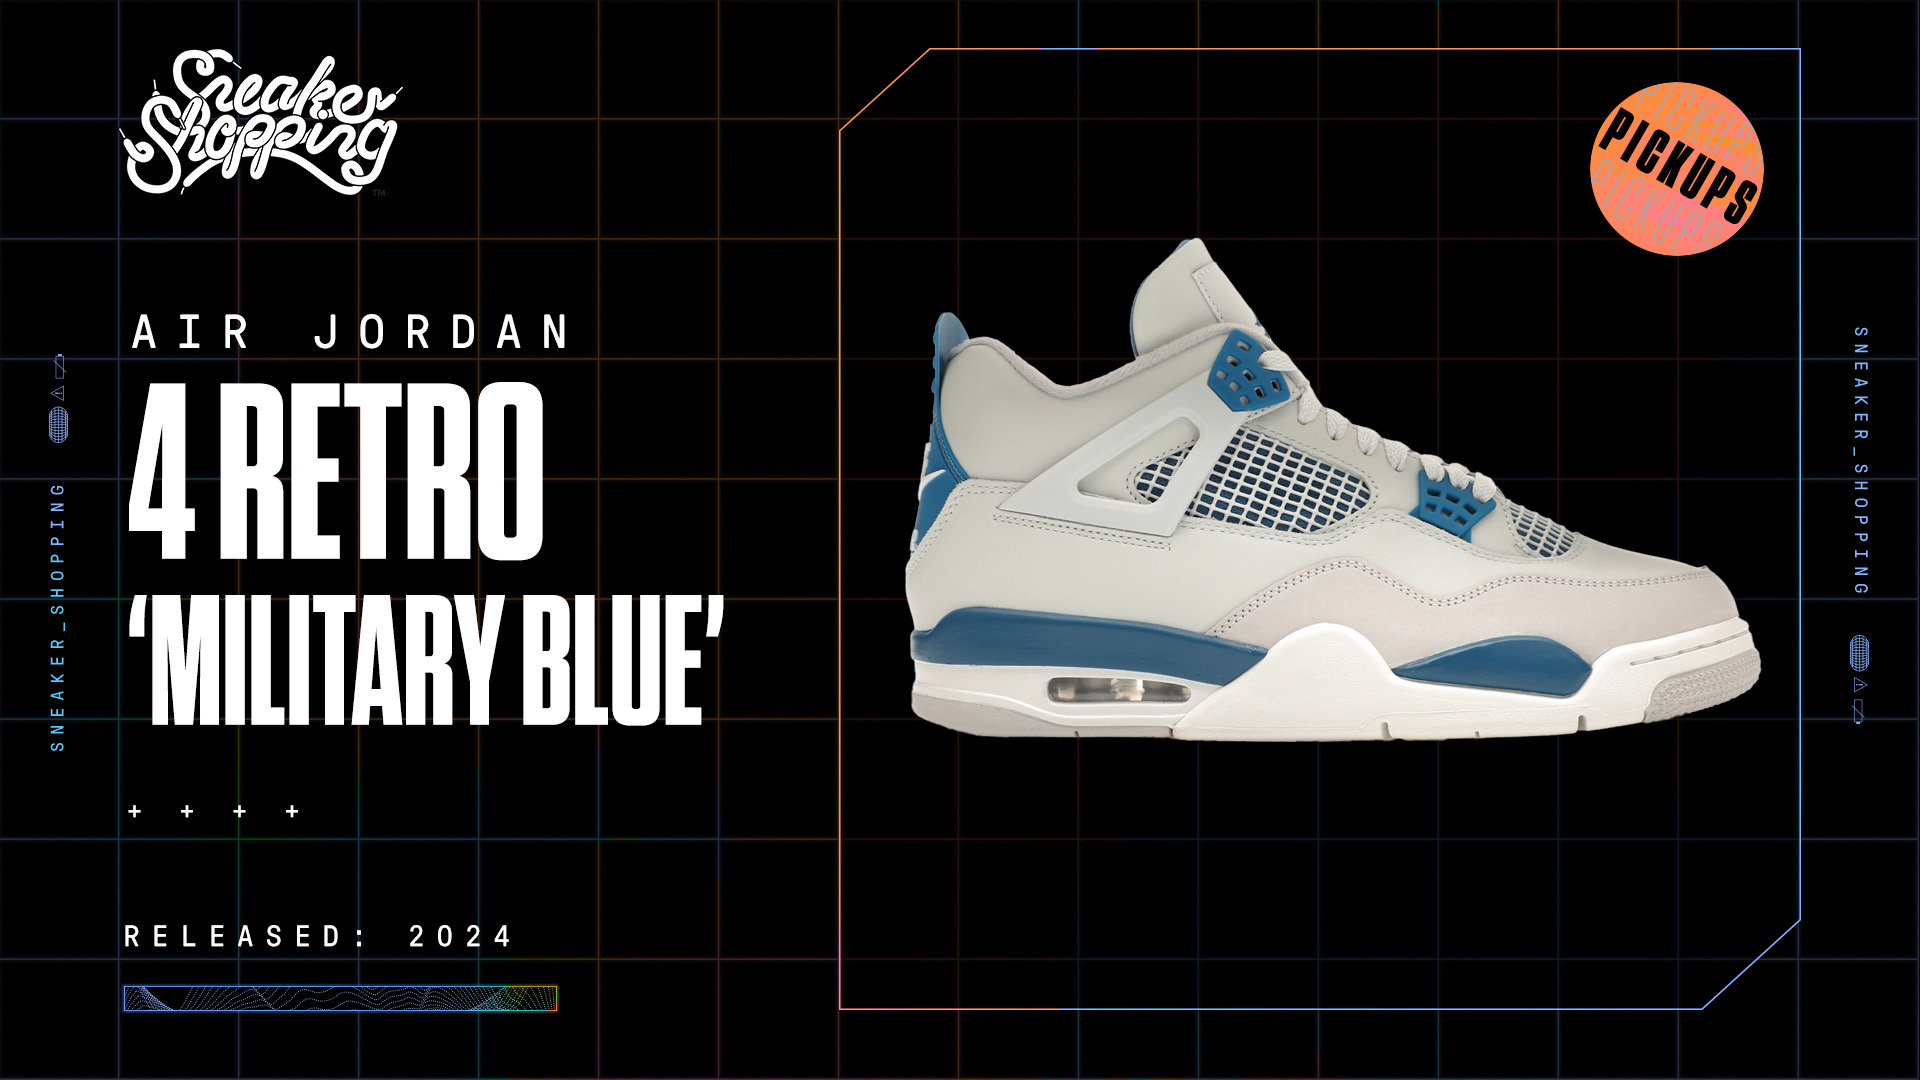 Air Jordan 4 Retro &#x27;Military Blue&#x27; sneaker, releasing in 2024